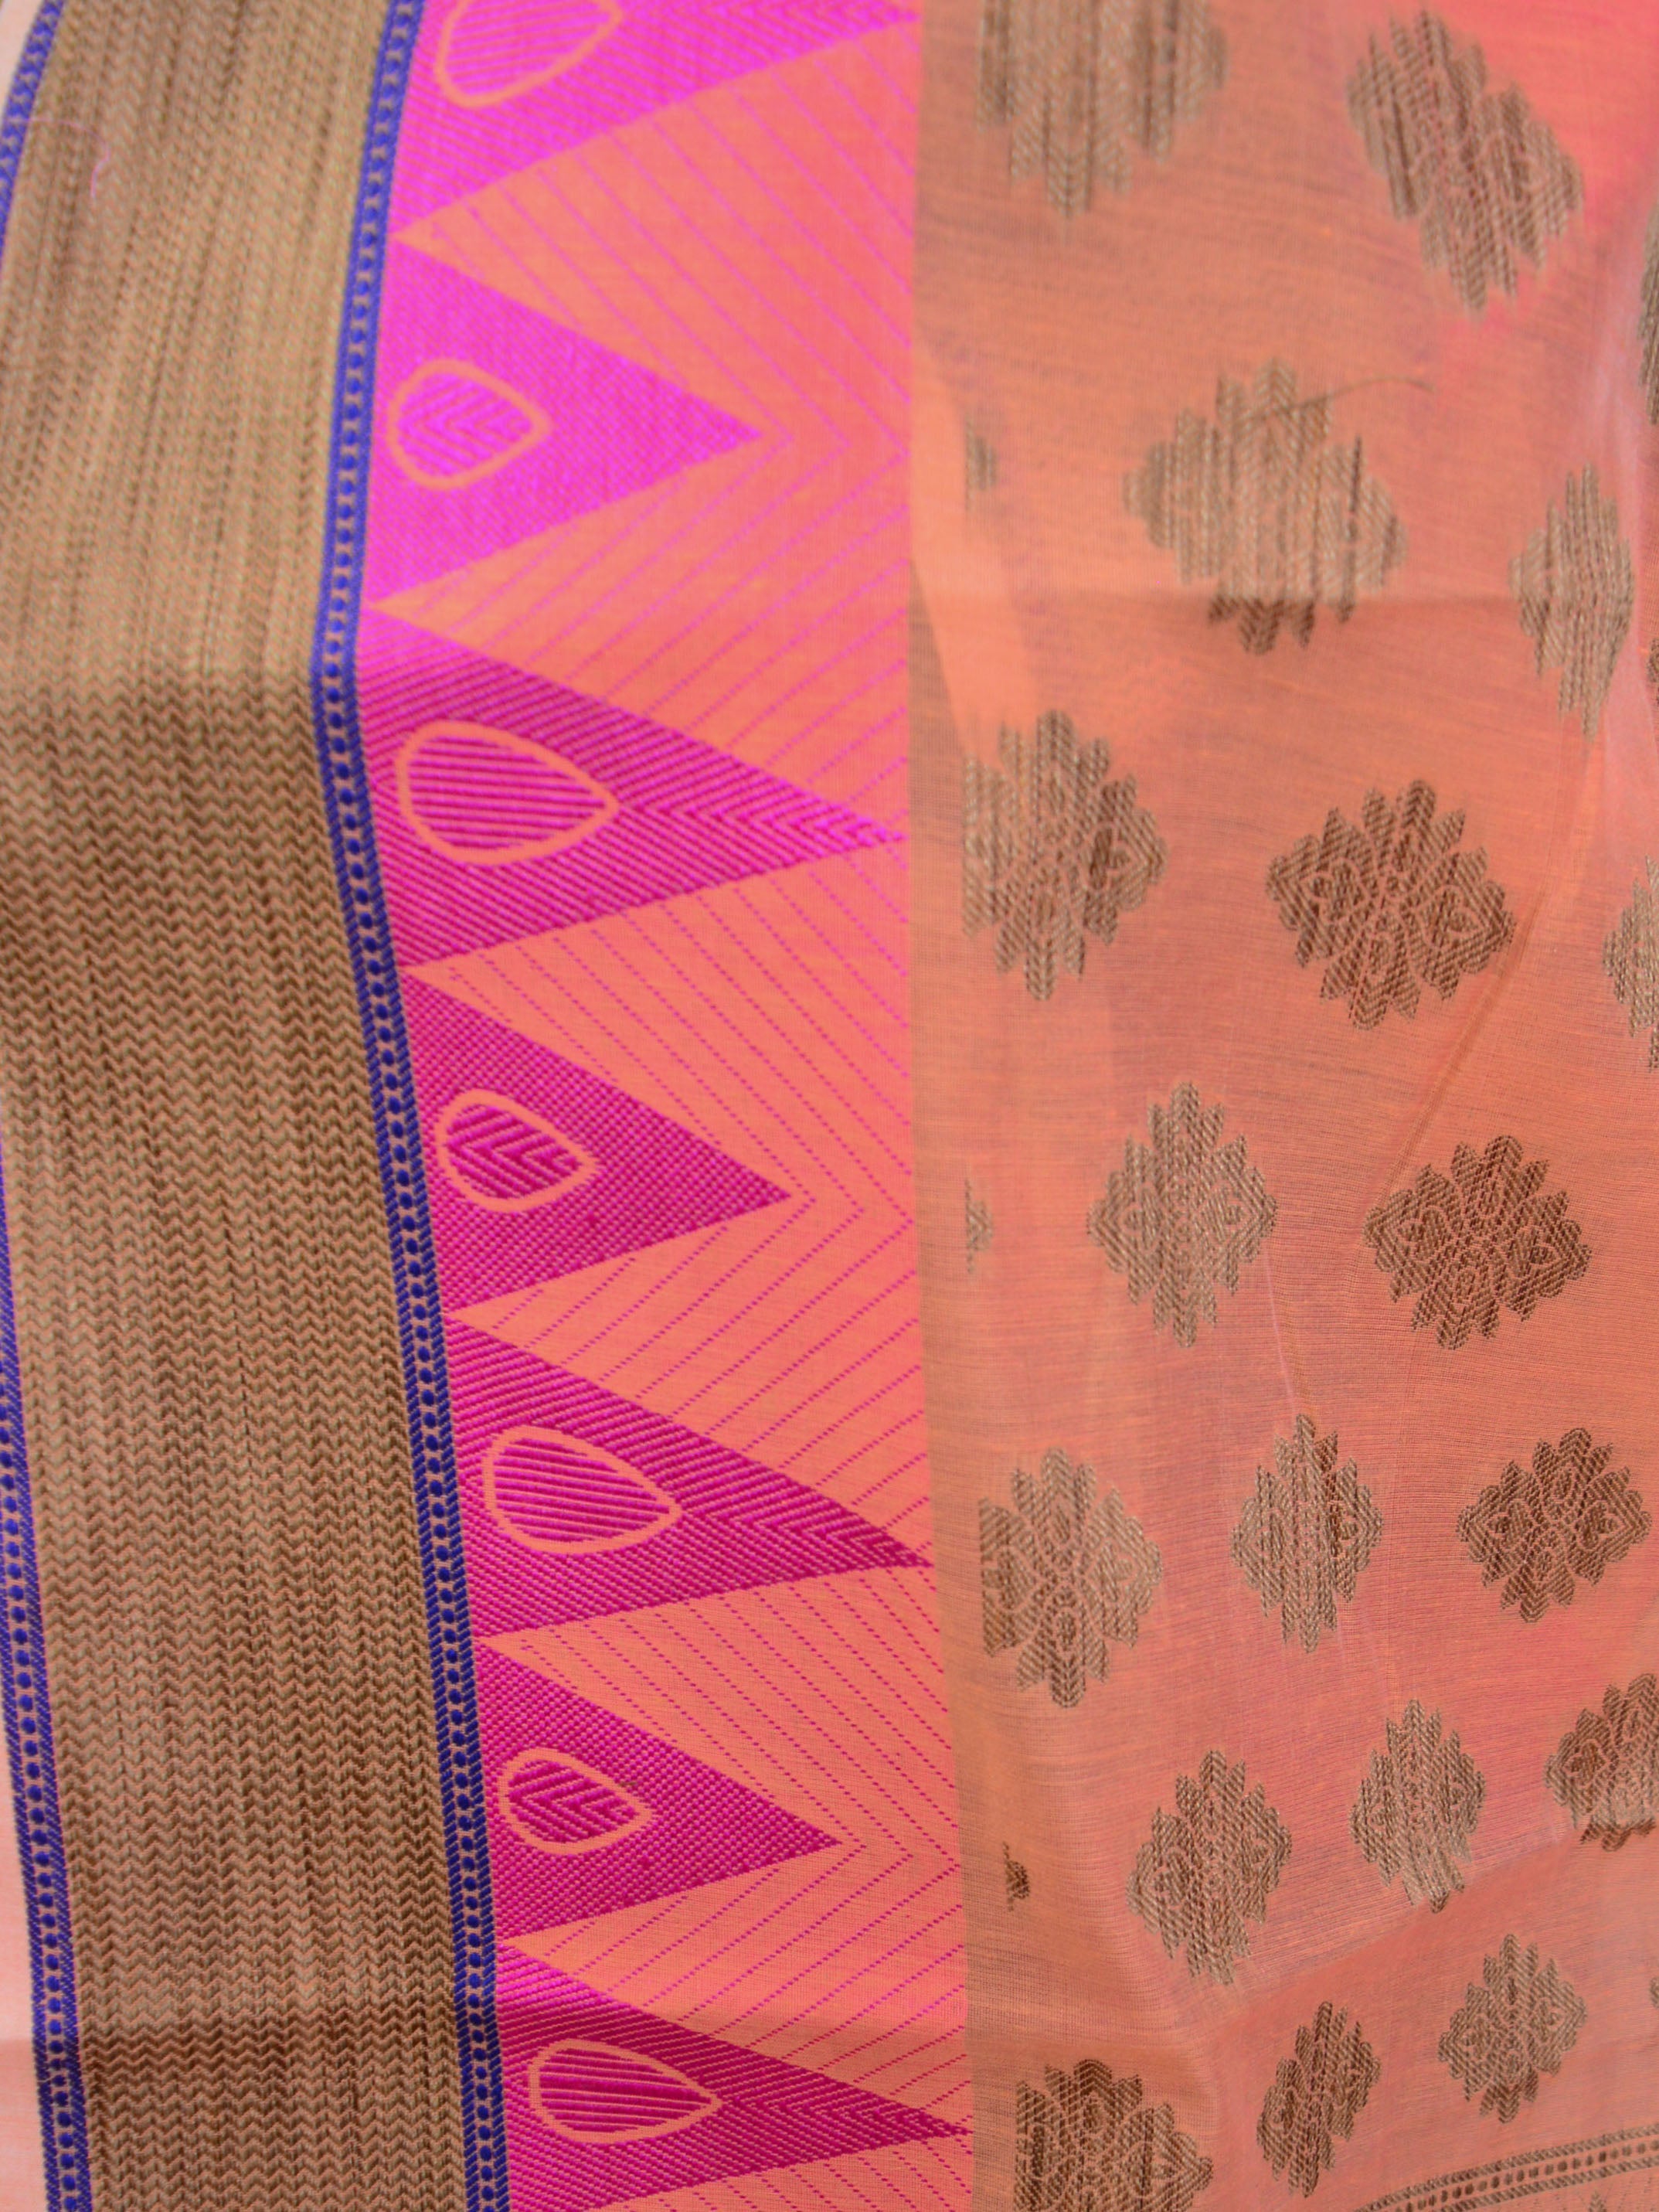 Banarasee Handloom Cotton Saree with Resham Work-Peach